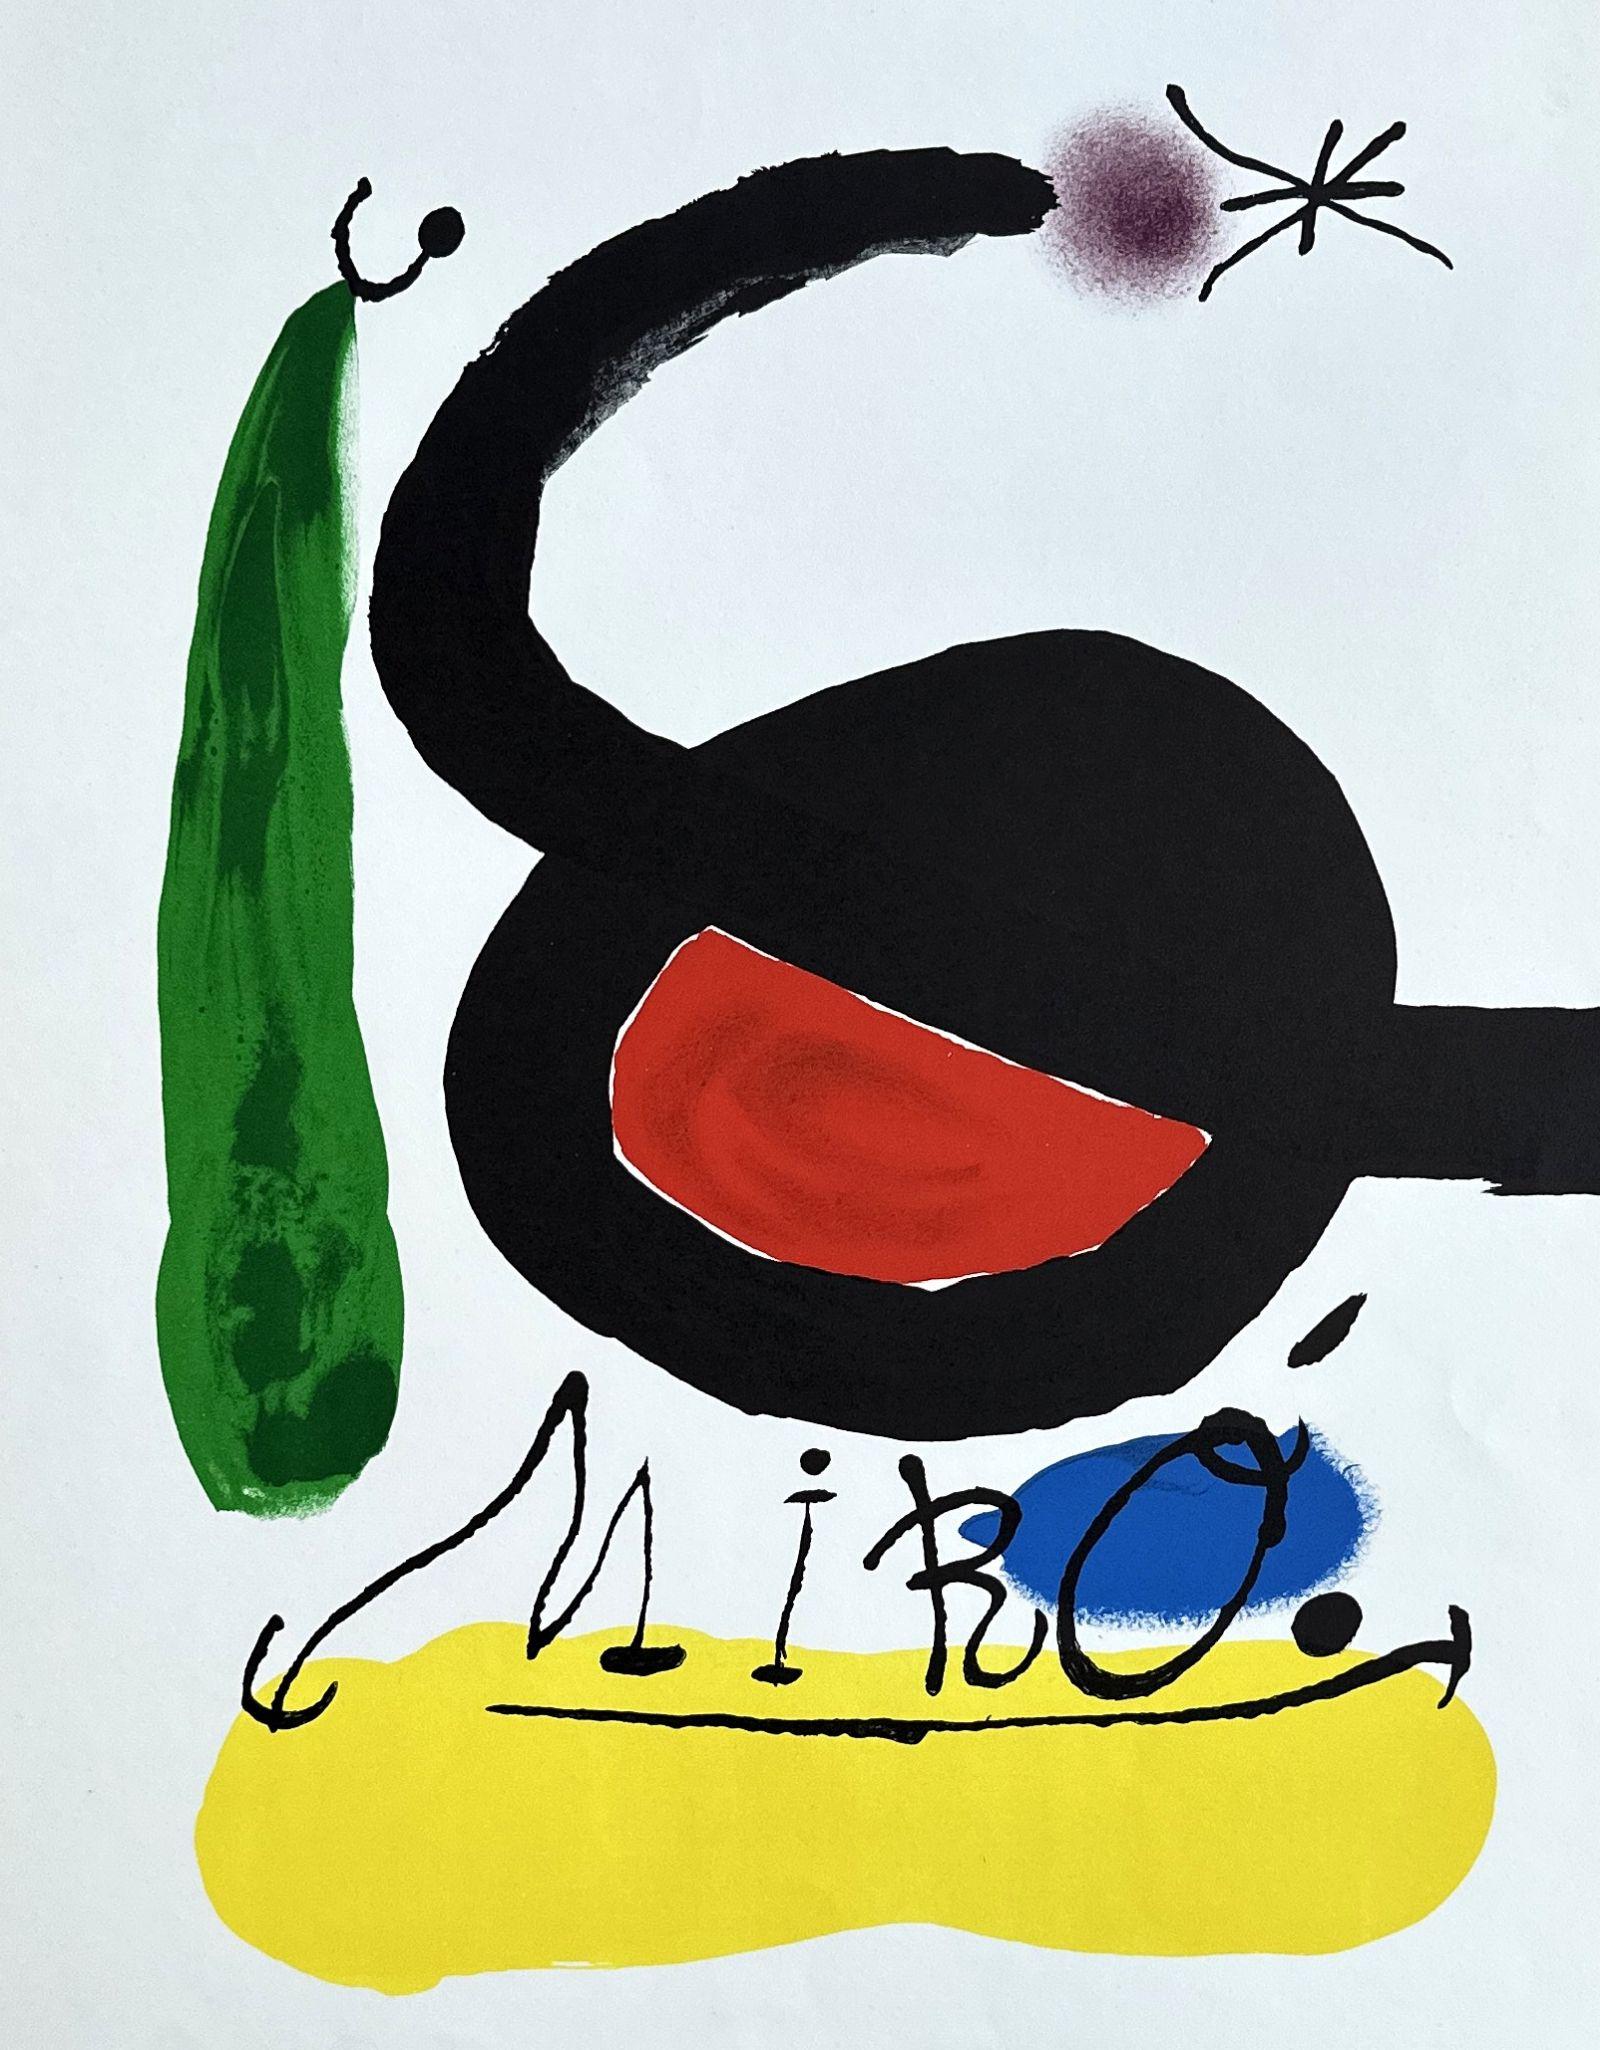 Oiseau surréaliste - Lithographie en couleurs signée dans l'assiette - 1971 - Print de Joan Miró